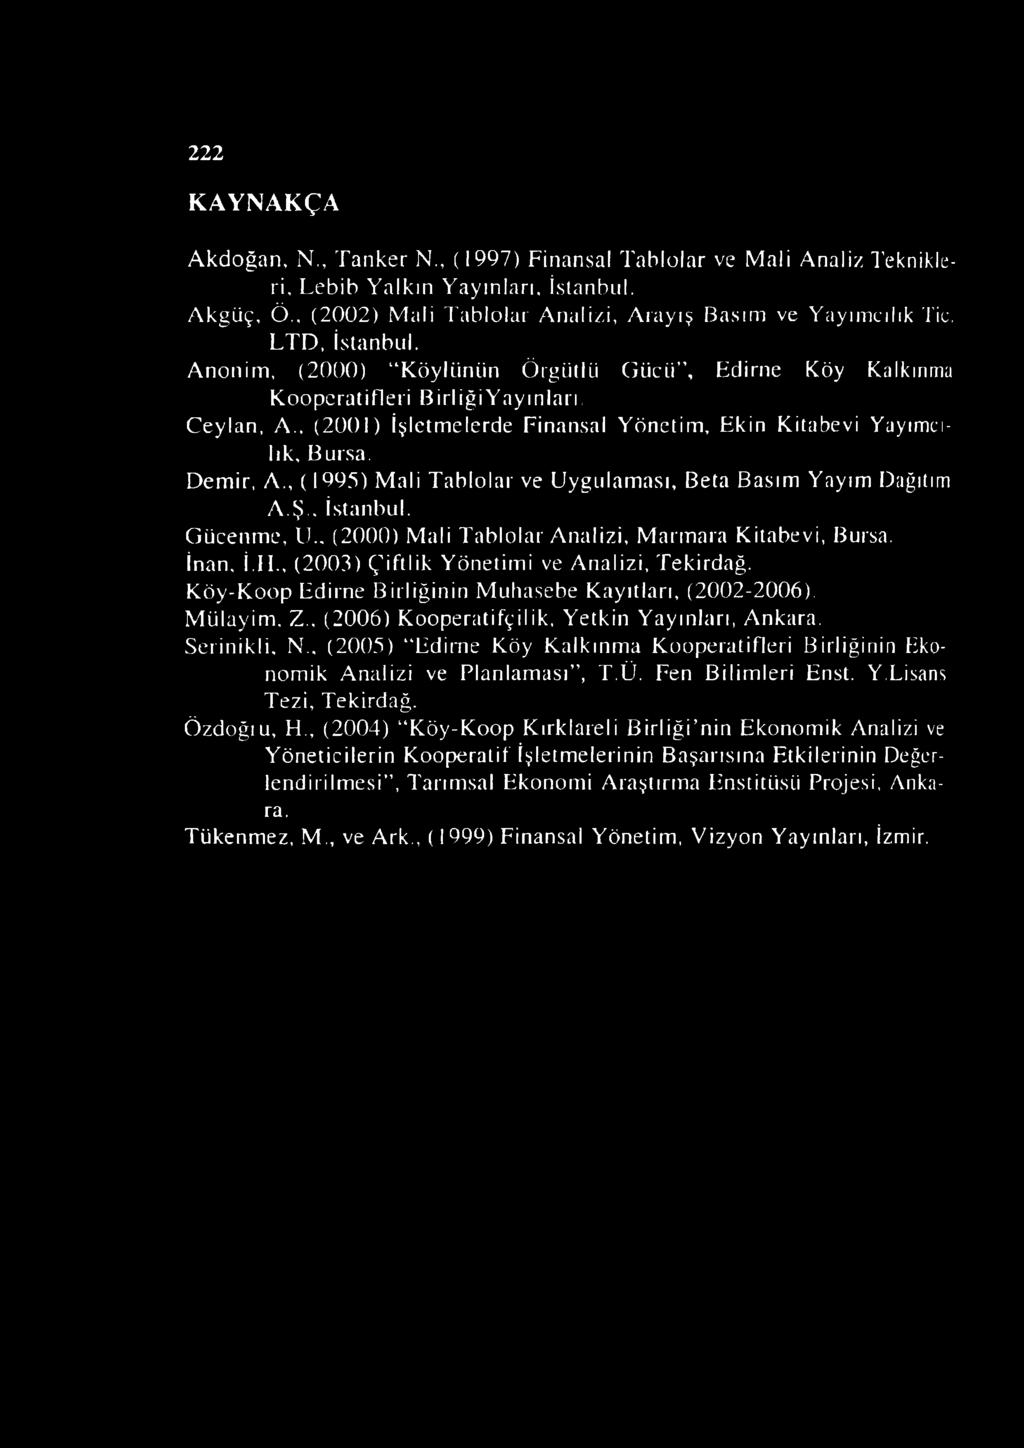 , (1995) Mali Tablolar ve Uygulaması, Beta Basım Yayım Dağıtım A.Ş.. İstanbul. Gücenme, EL (2000) Mali Tablolar Analizi, Marmara Kitabevi, Bursa. İnan, İ.II.